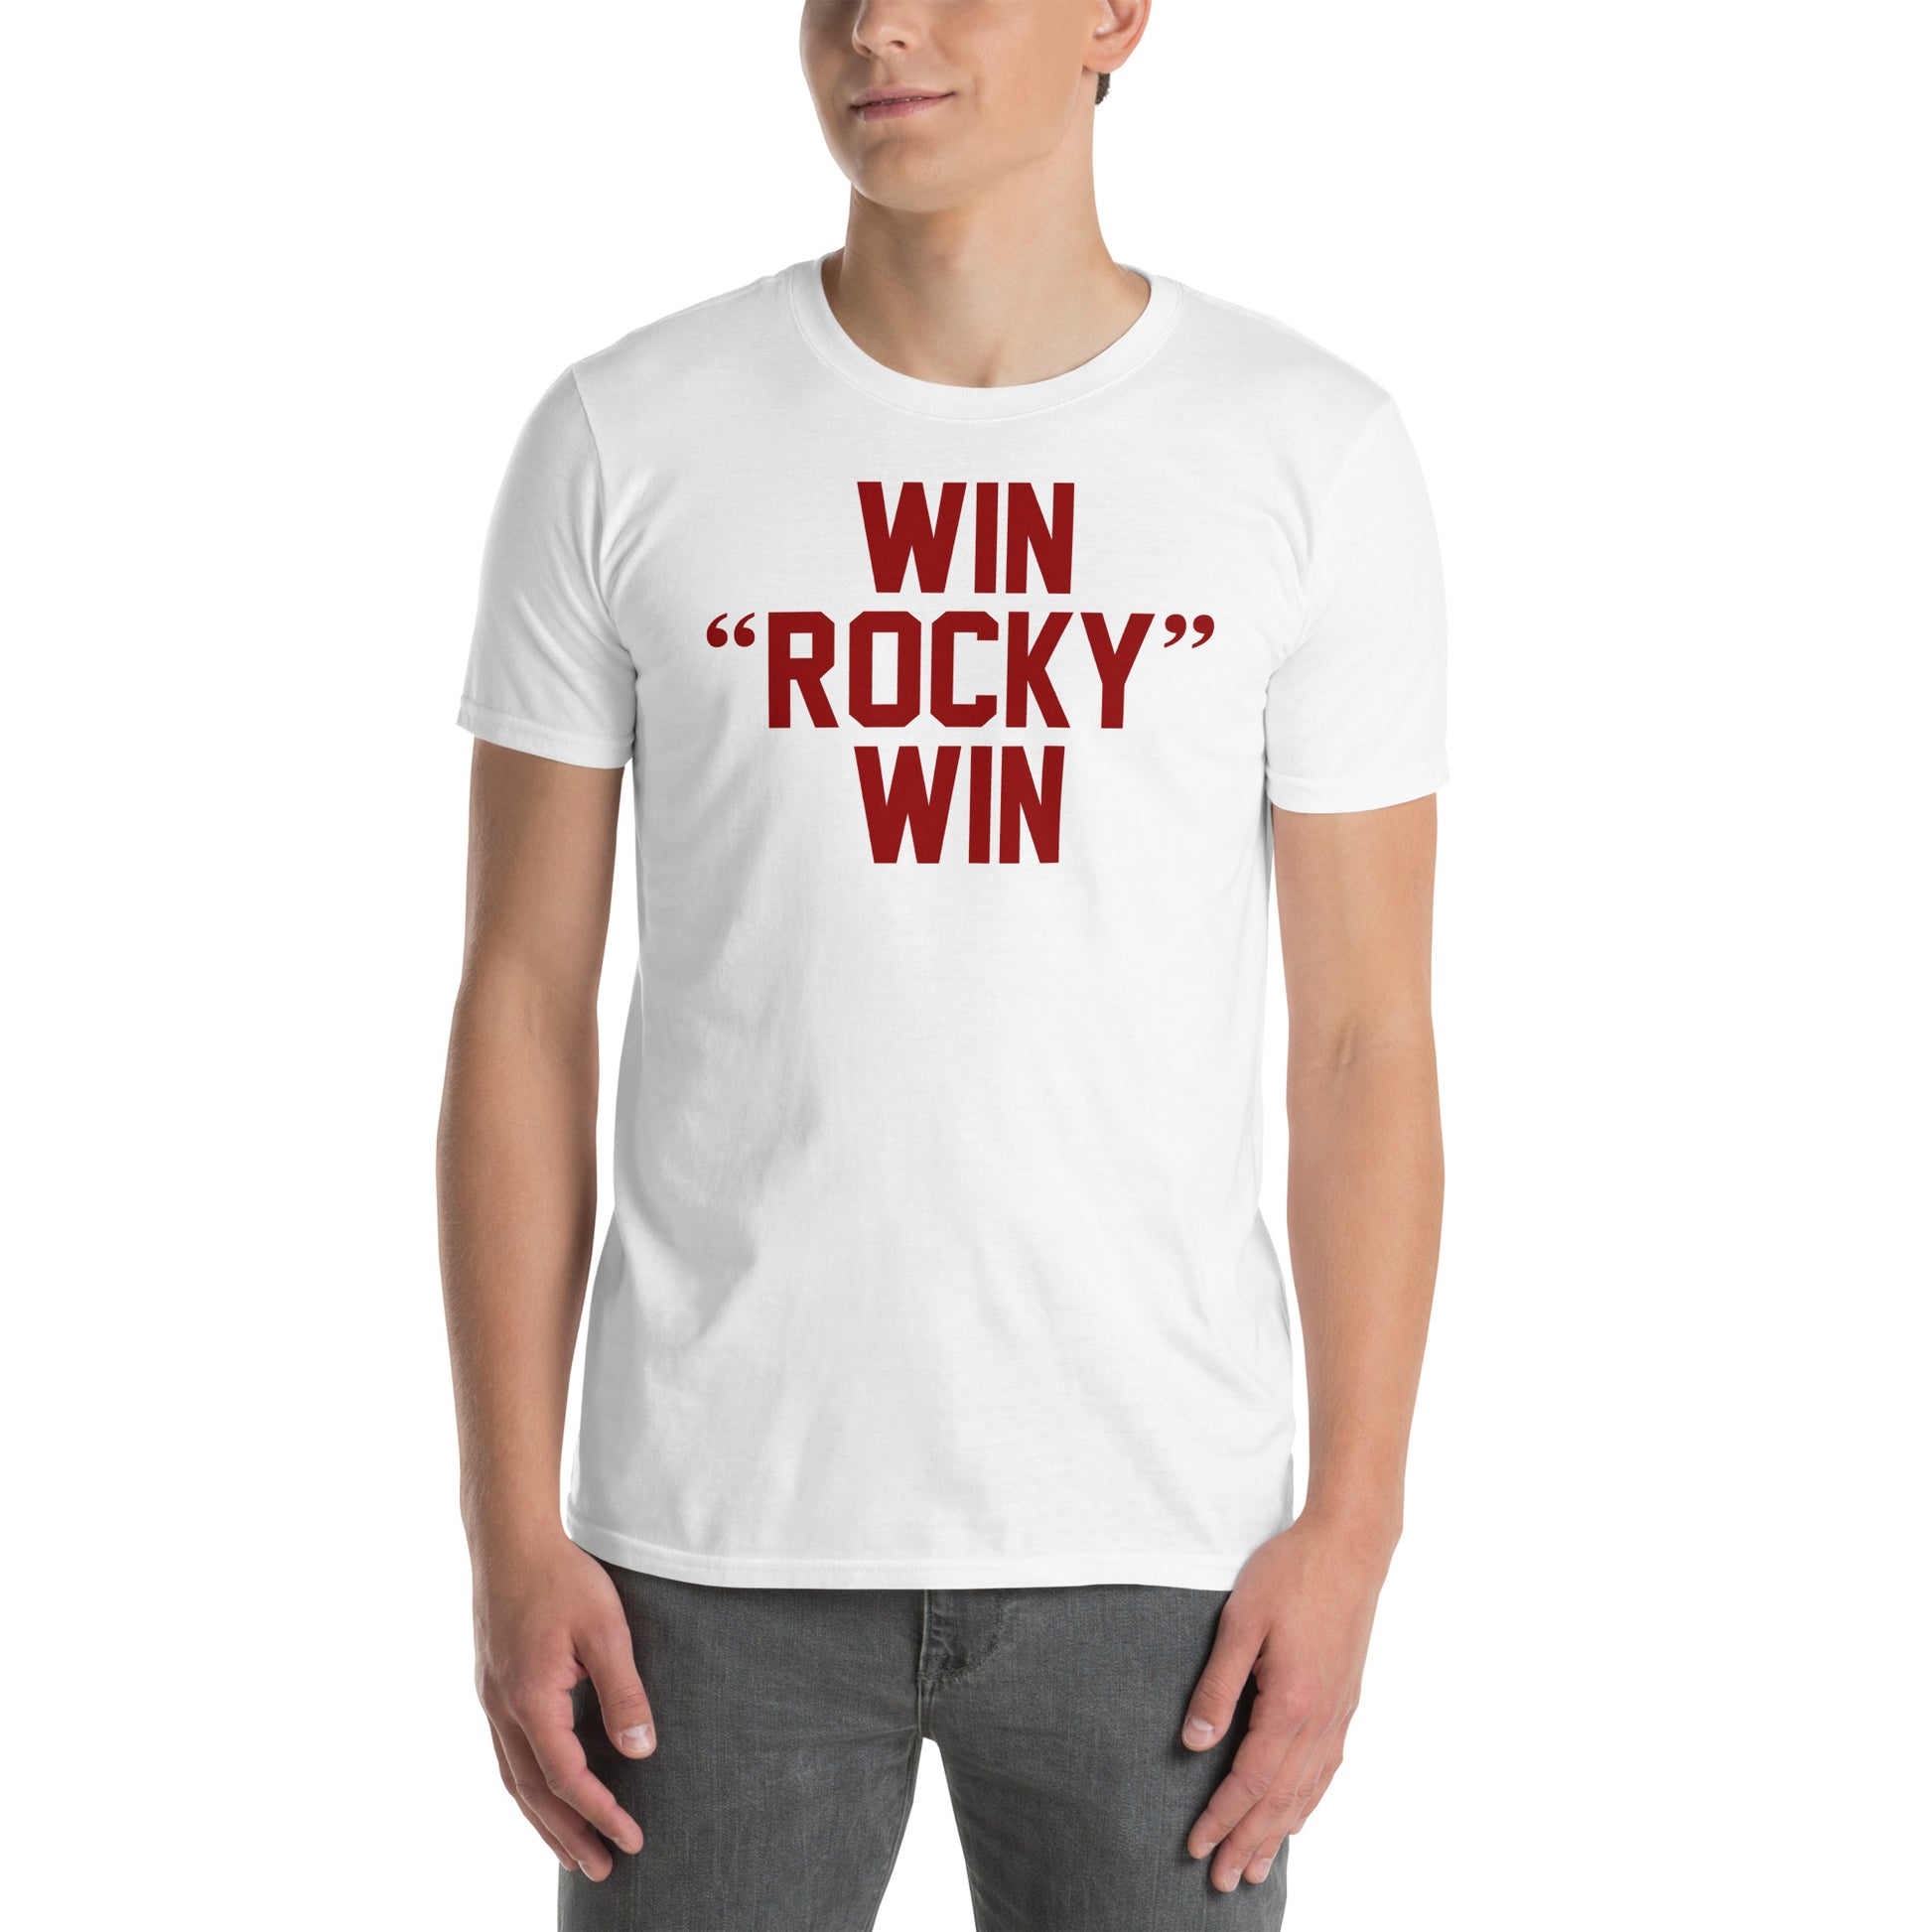 Camiseta Win Rocky Win de la película Rocky. Color blanco.